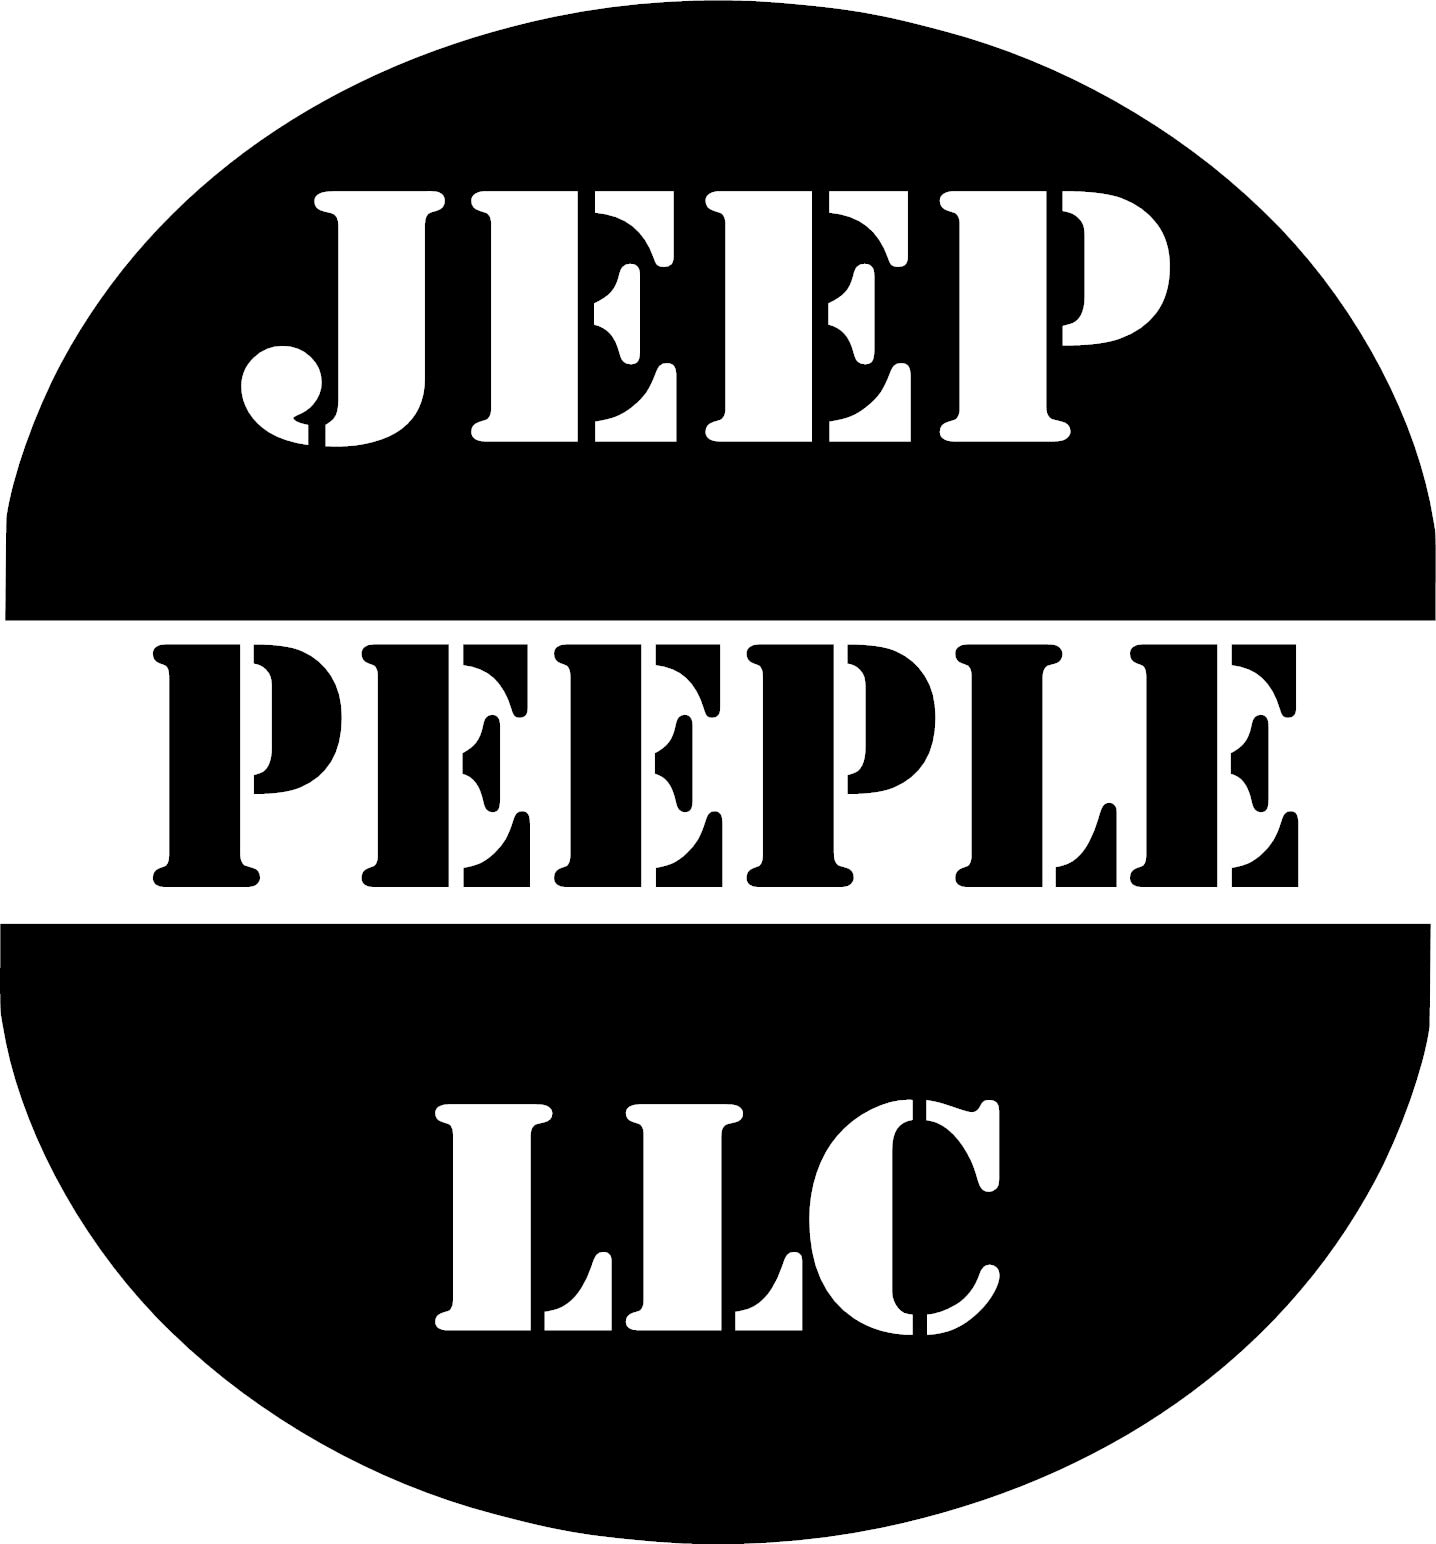 Jeep Peeple